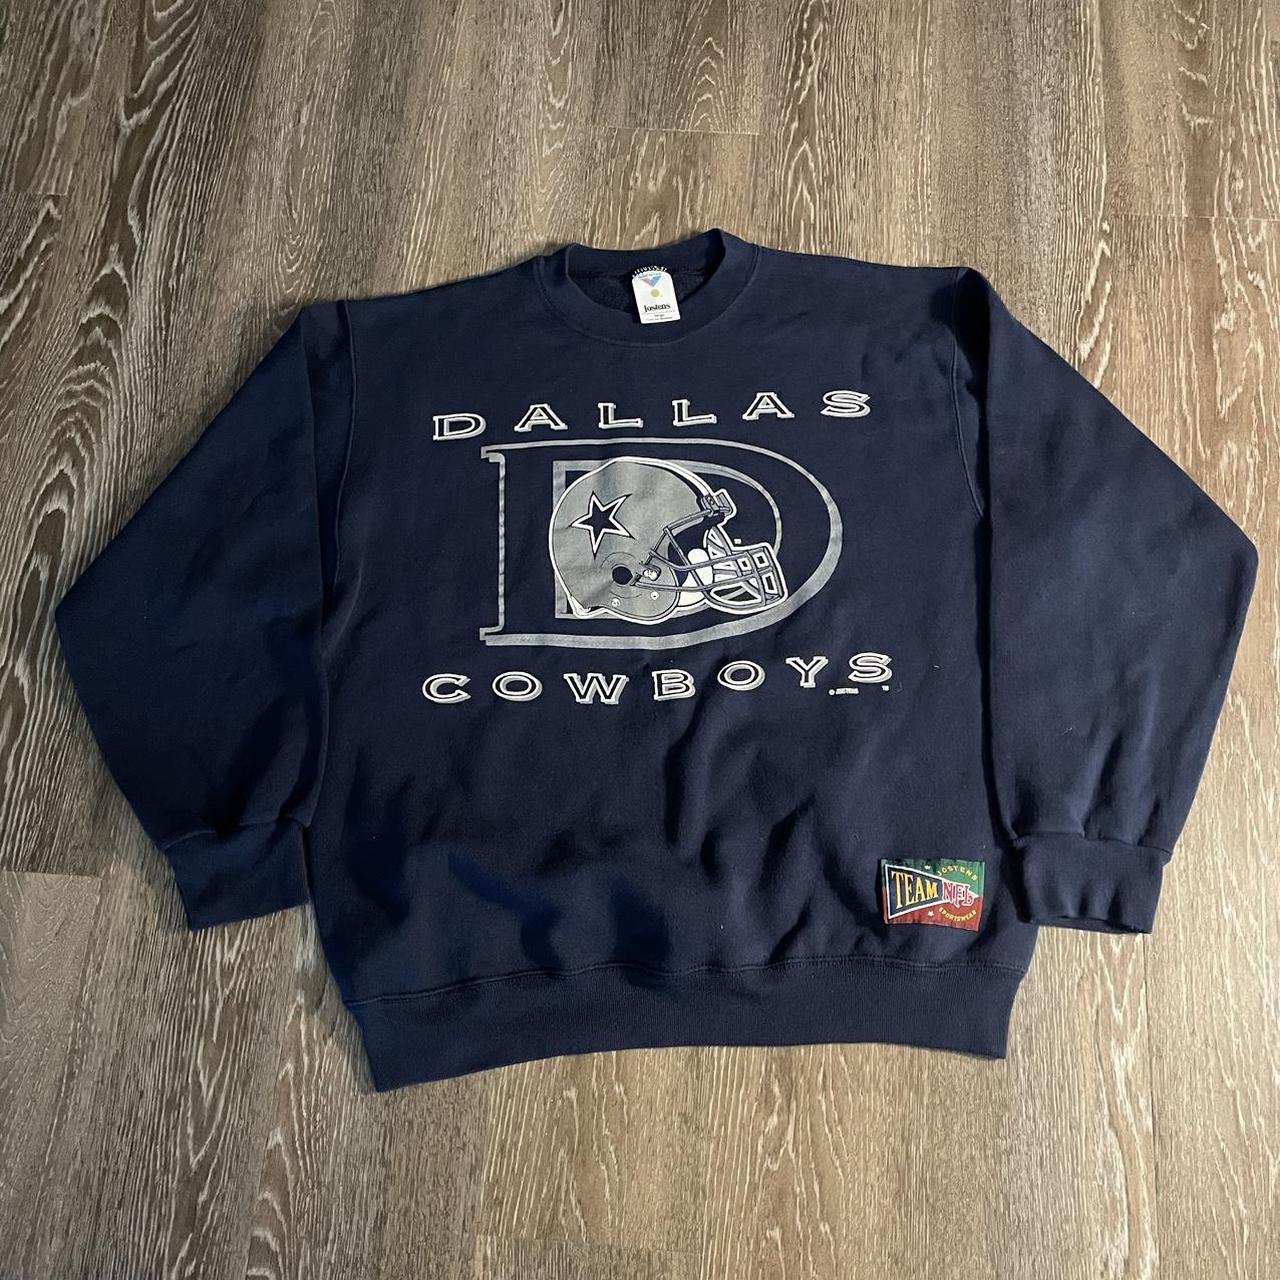 Vintage 90s Dallas cowboys crewneck sweatshirt ! - Depop